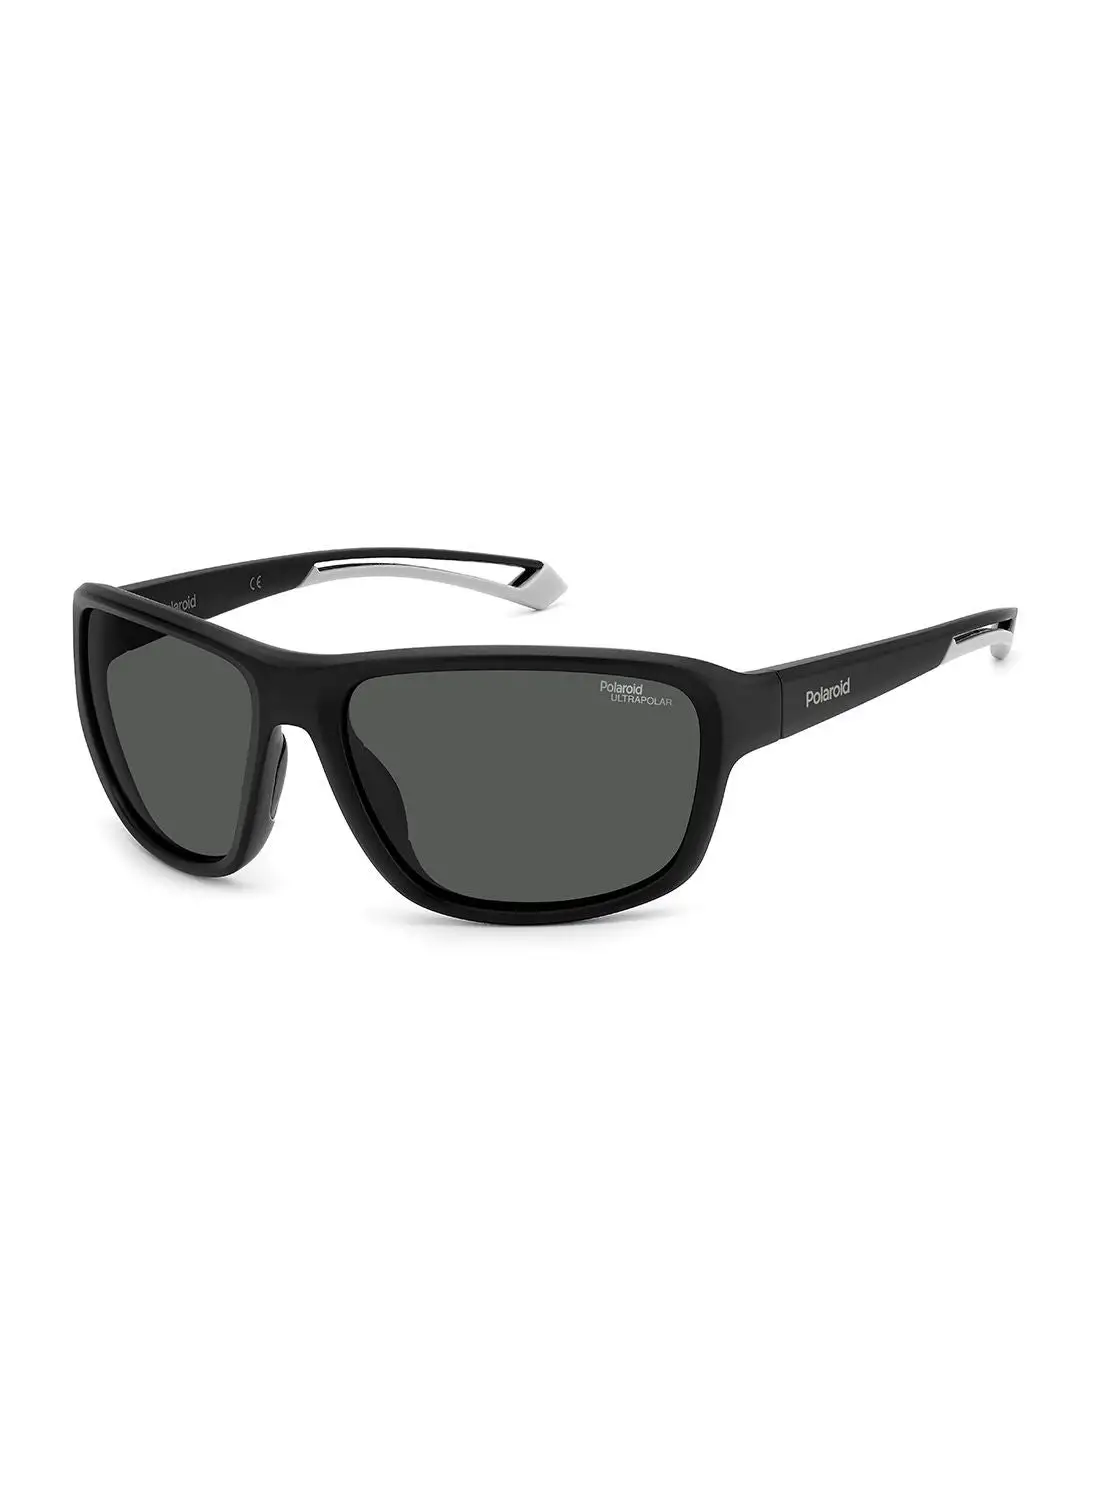 Polaroid Unisex UV Protection Rectangular Sunglasses - Pld 7049/S Mtt Black 62 - Lens Size: 62 Mm